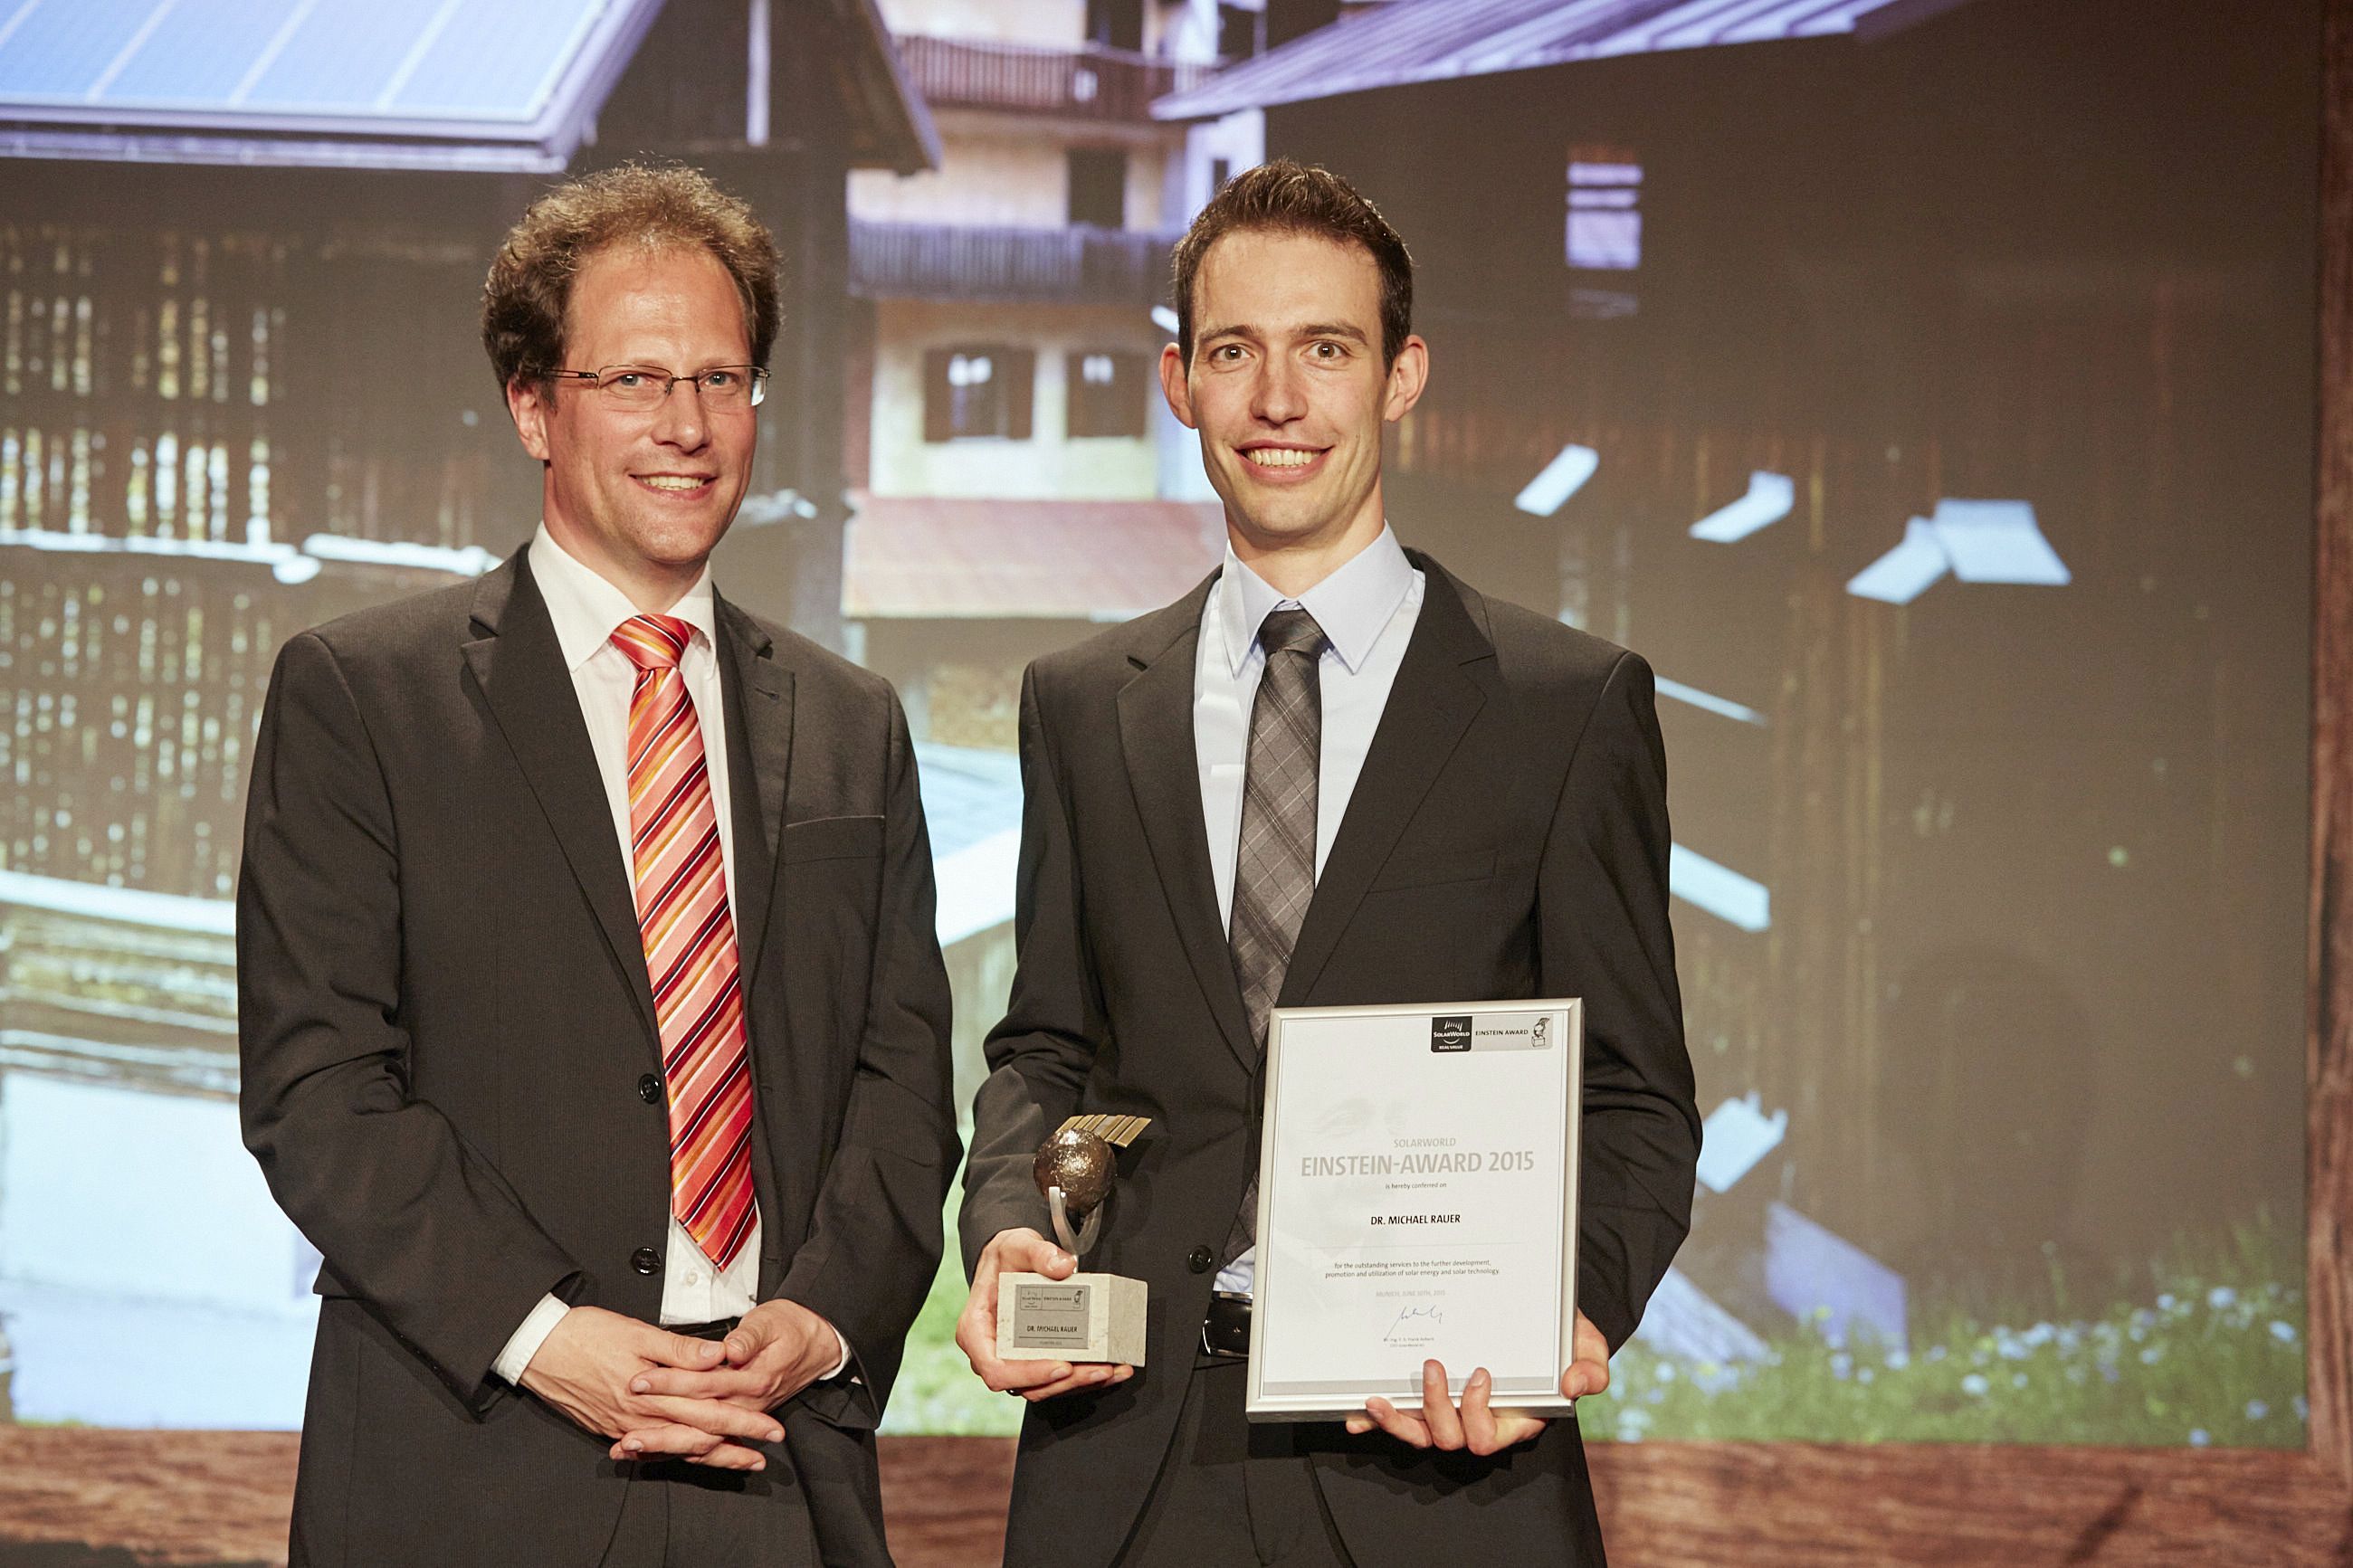 Preisverleihung SolarWorld Junior Einstein Award 2015, Dr. Holger Neuhaus, Vorsitzender der SolarWorld Einstein Award Jury (li), Preisträger Michael Rauer, Fraunhofer ISE (re). 